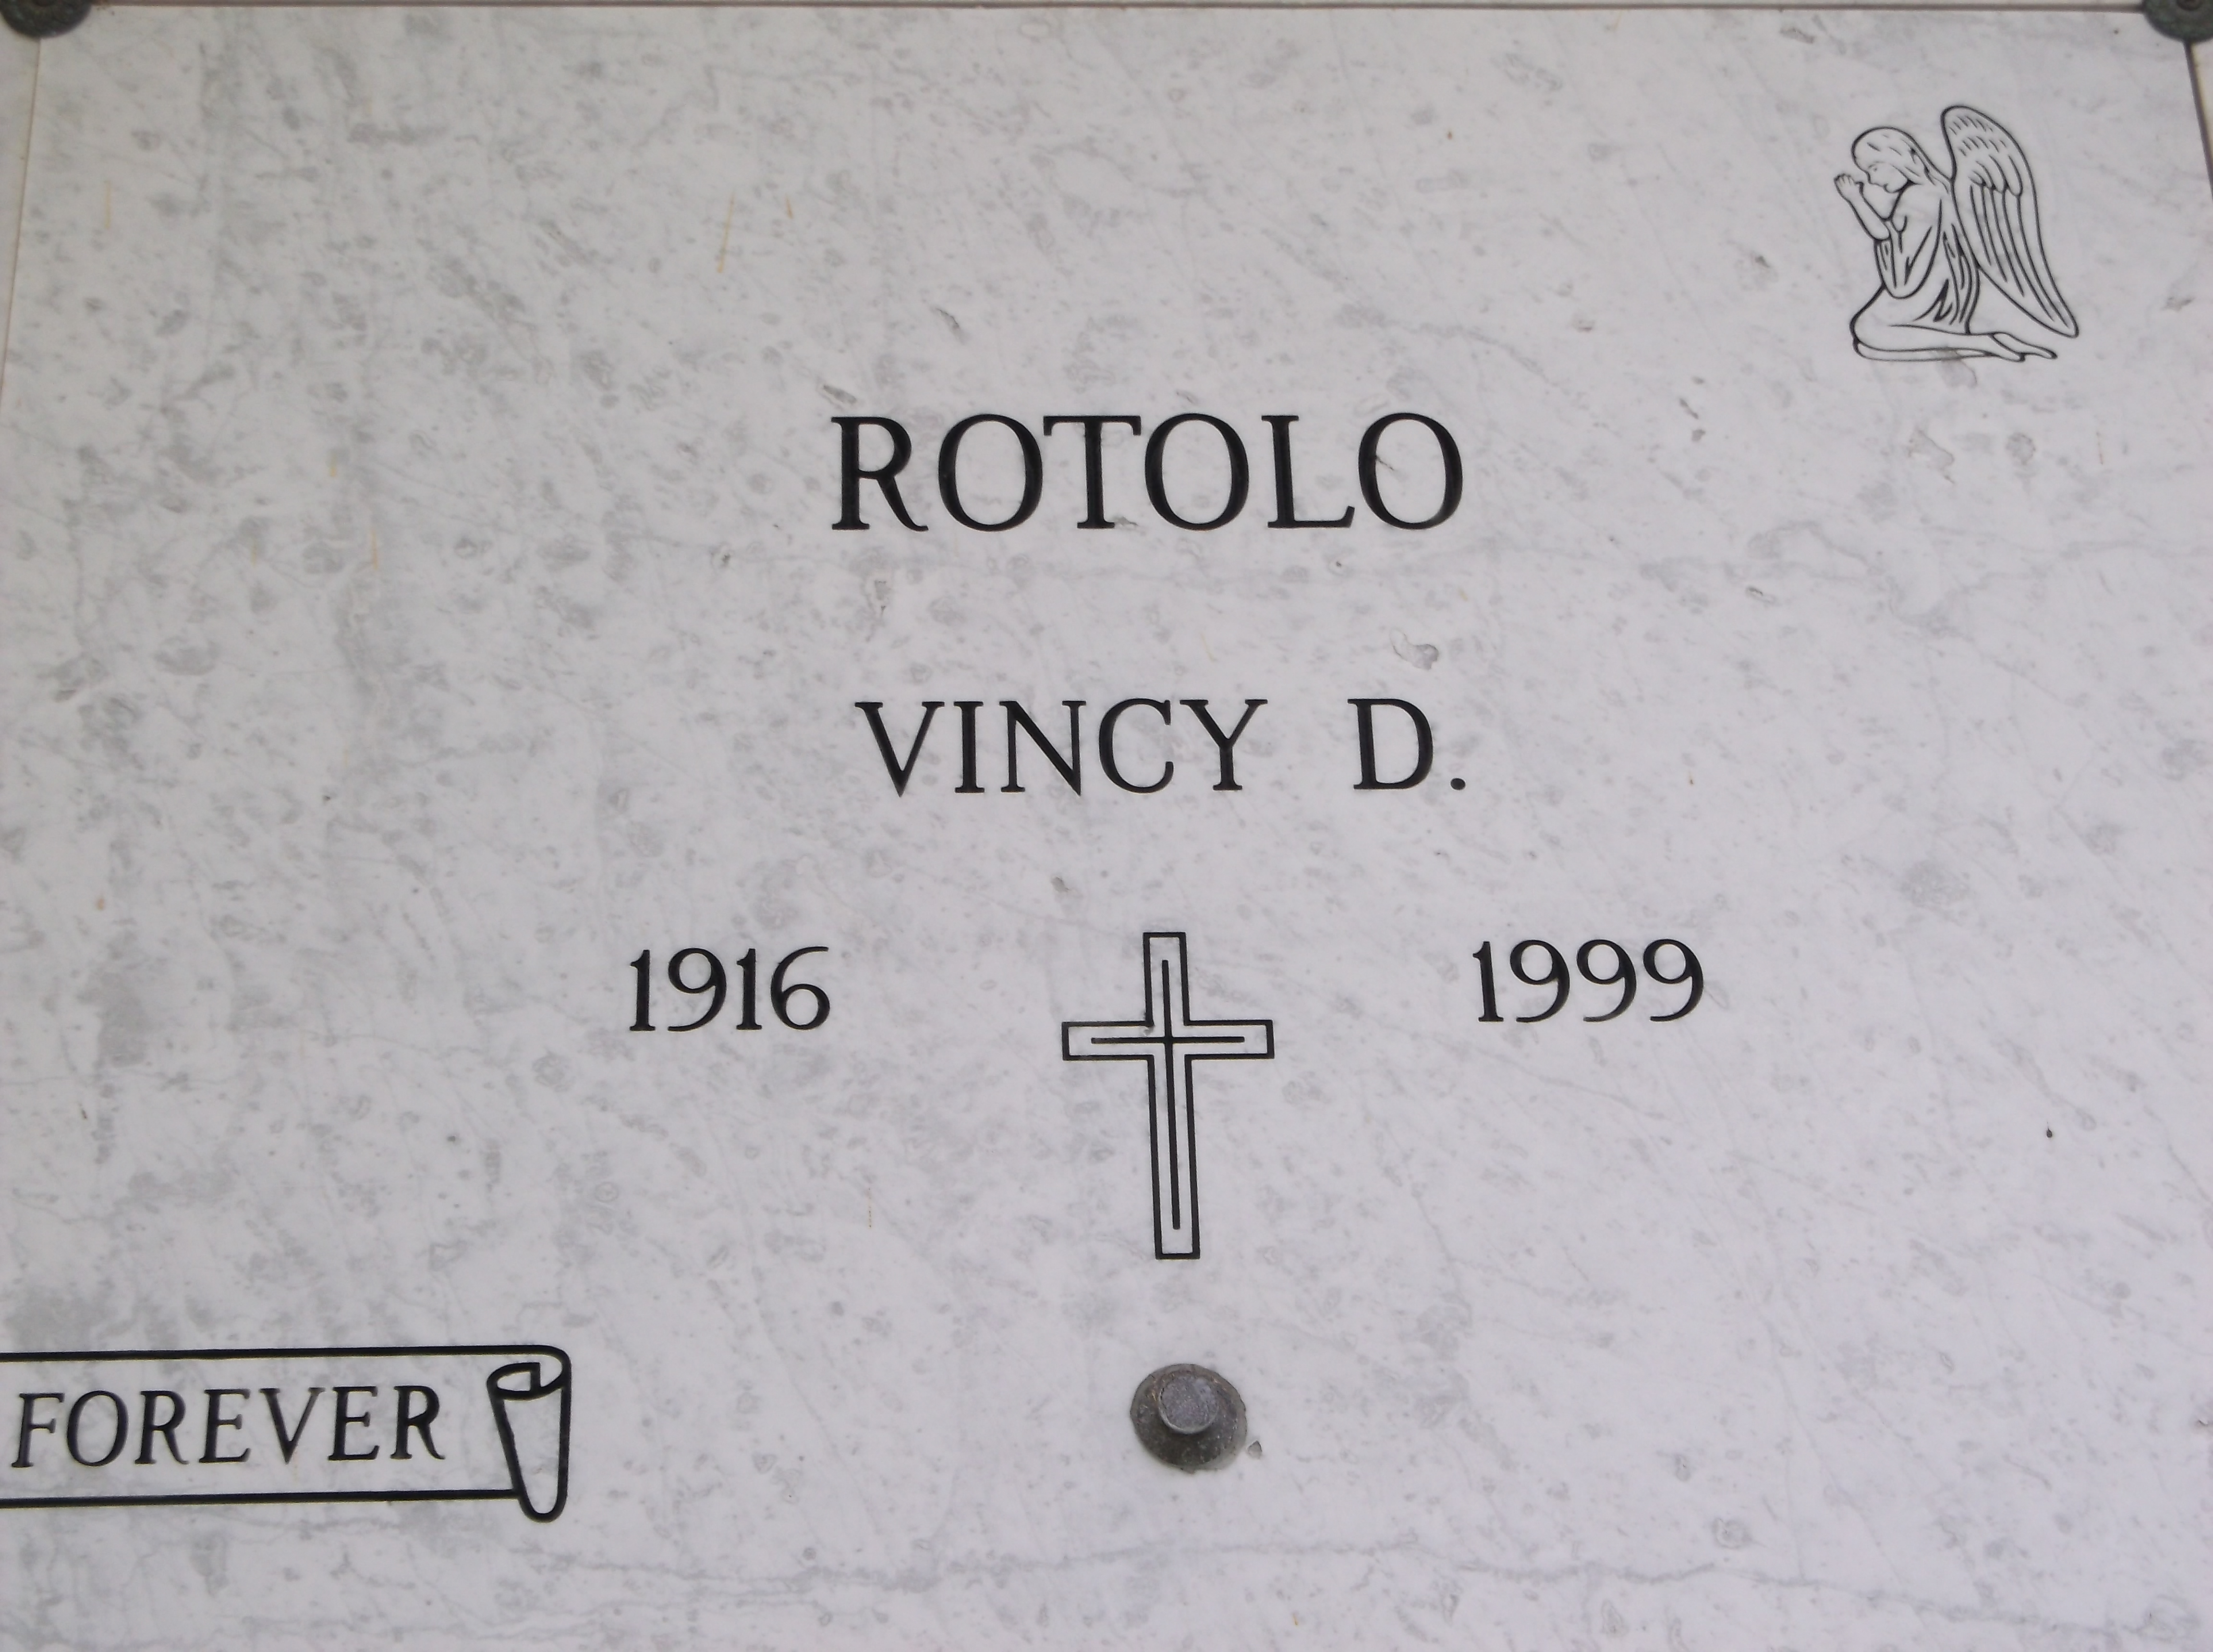 Vincy D Rotolo